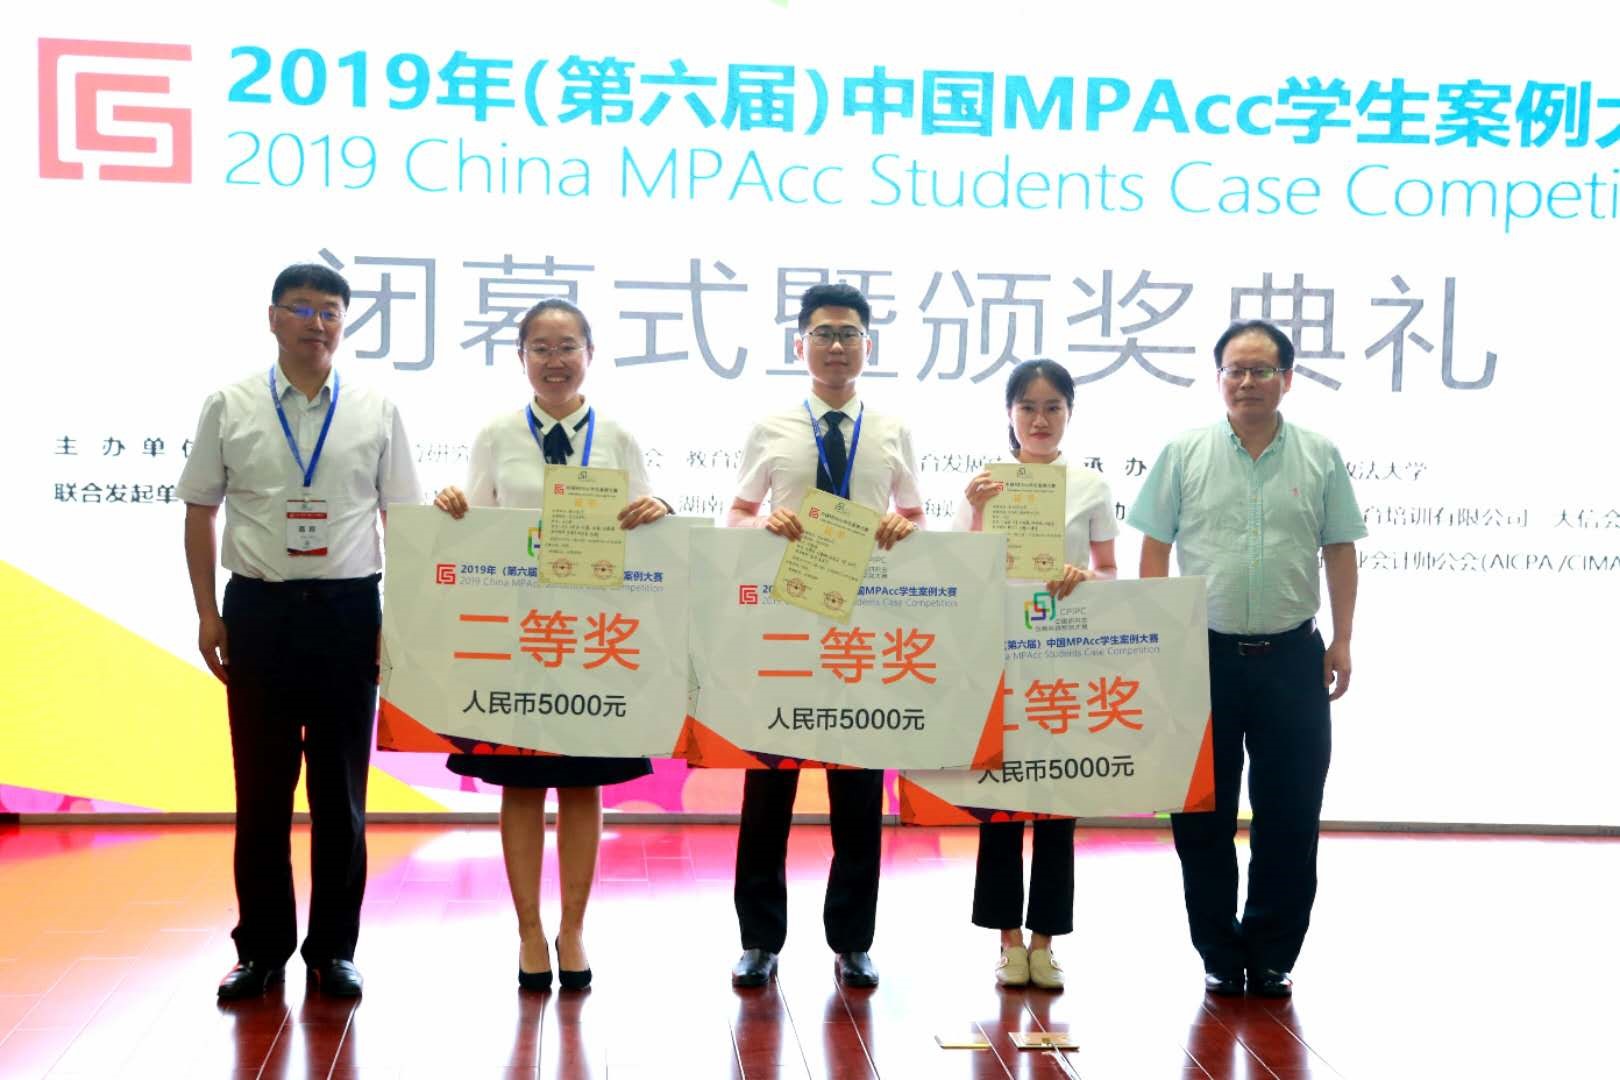 我校代表队在第五届中国MPAcc学生案例大赛中获得佳绩-南华大学经济管理与法学学院